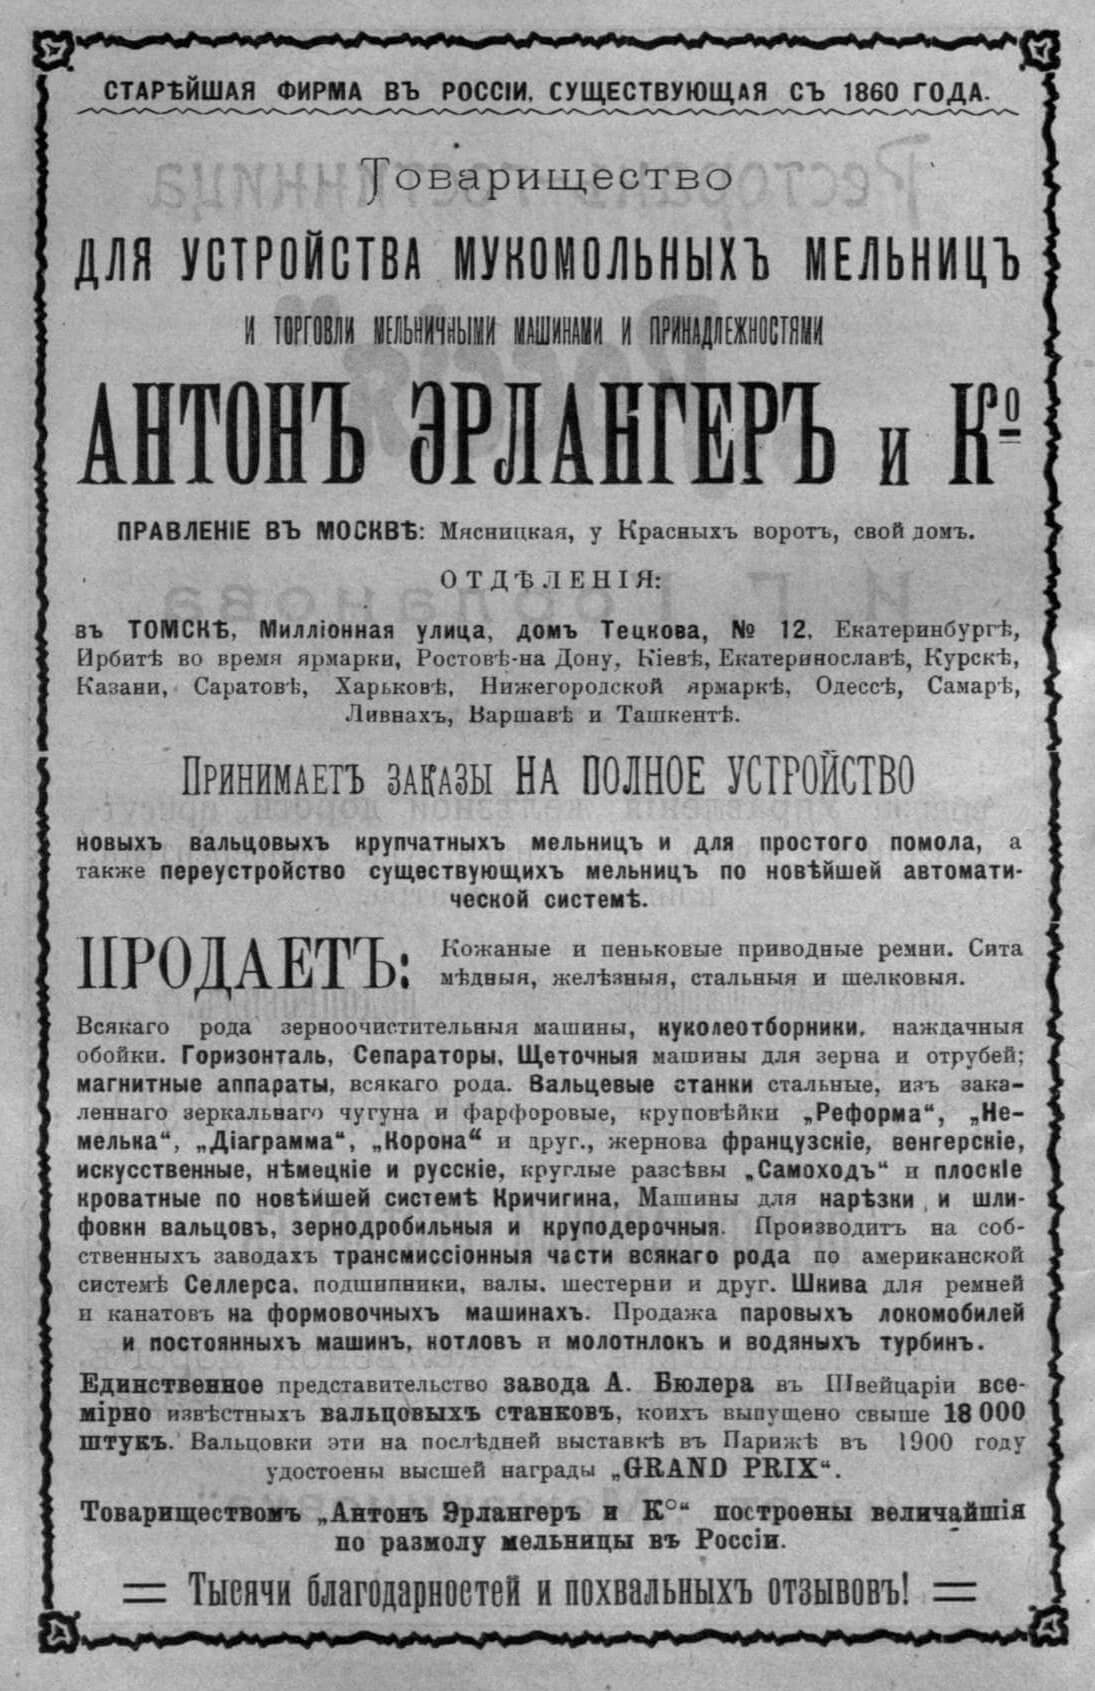 Сибирский наблюдатель. - 1903. - Кн. 5 (май)